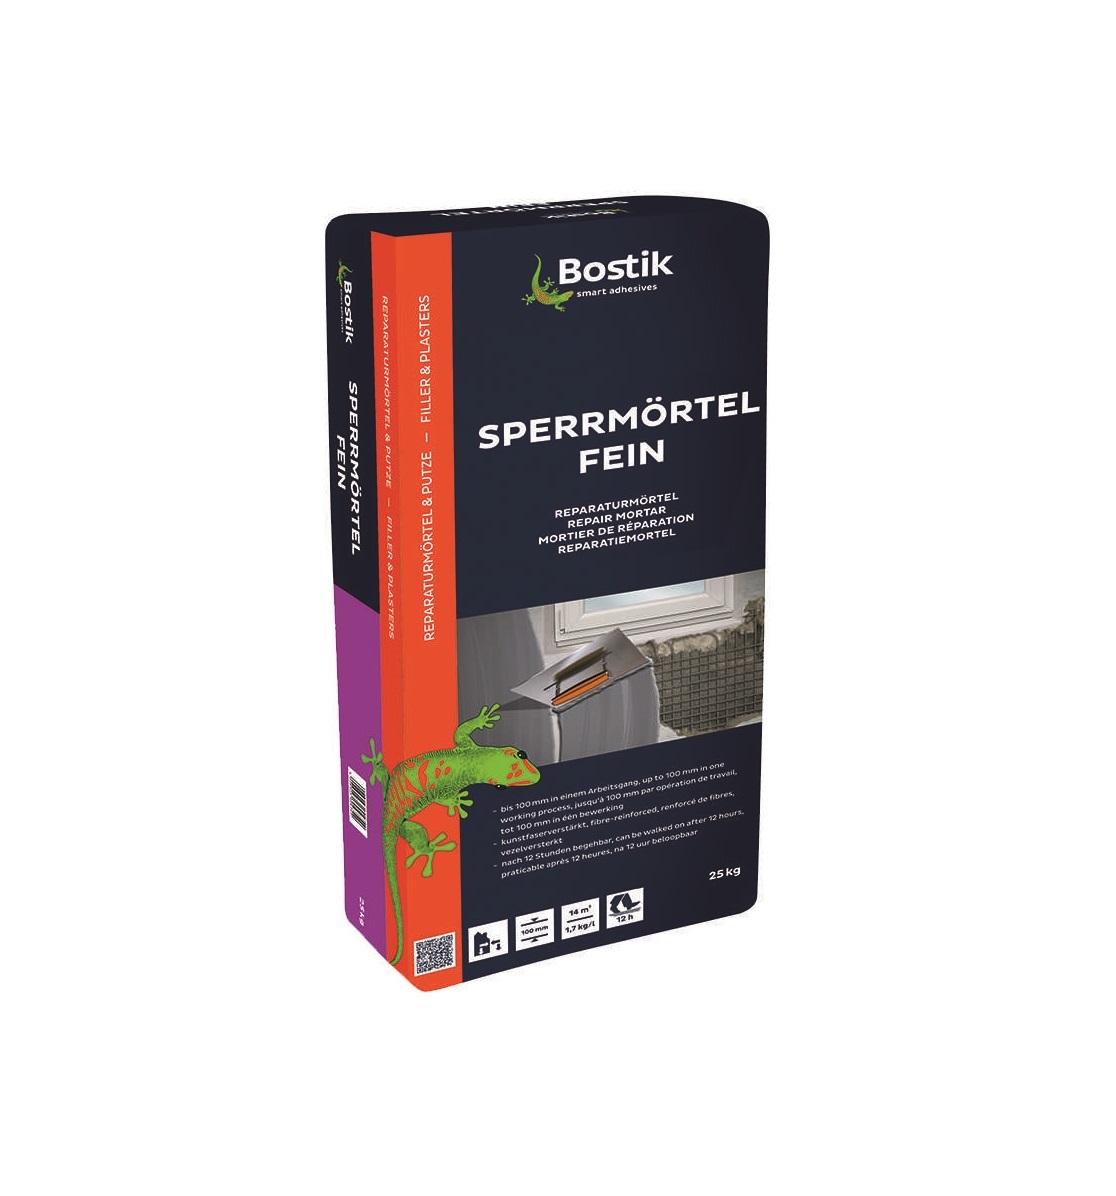 Уплотнительный раствор файн, Бостик / Sperrmortel fein,Bostik